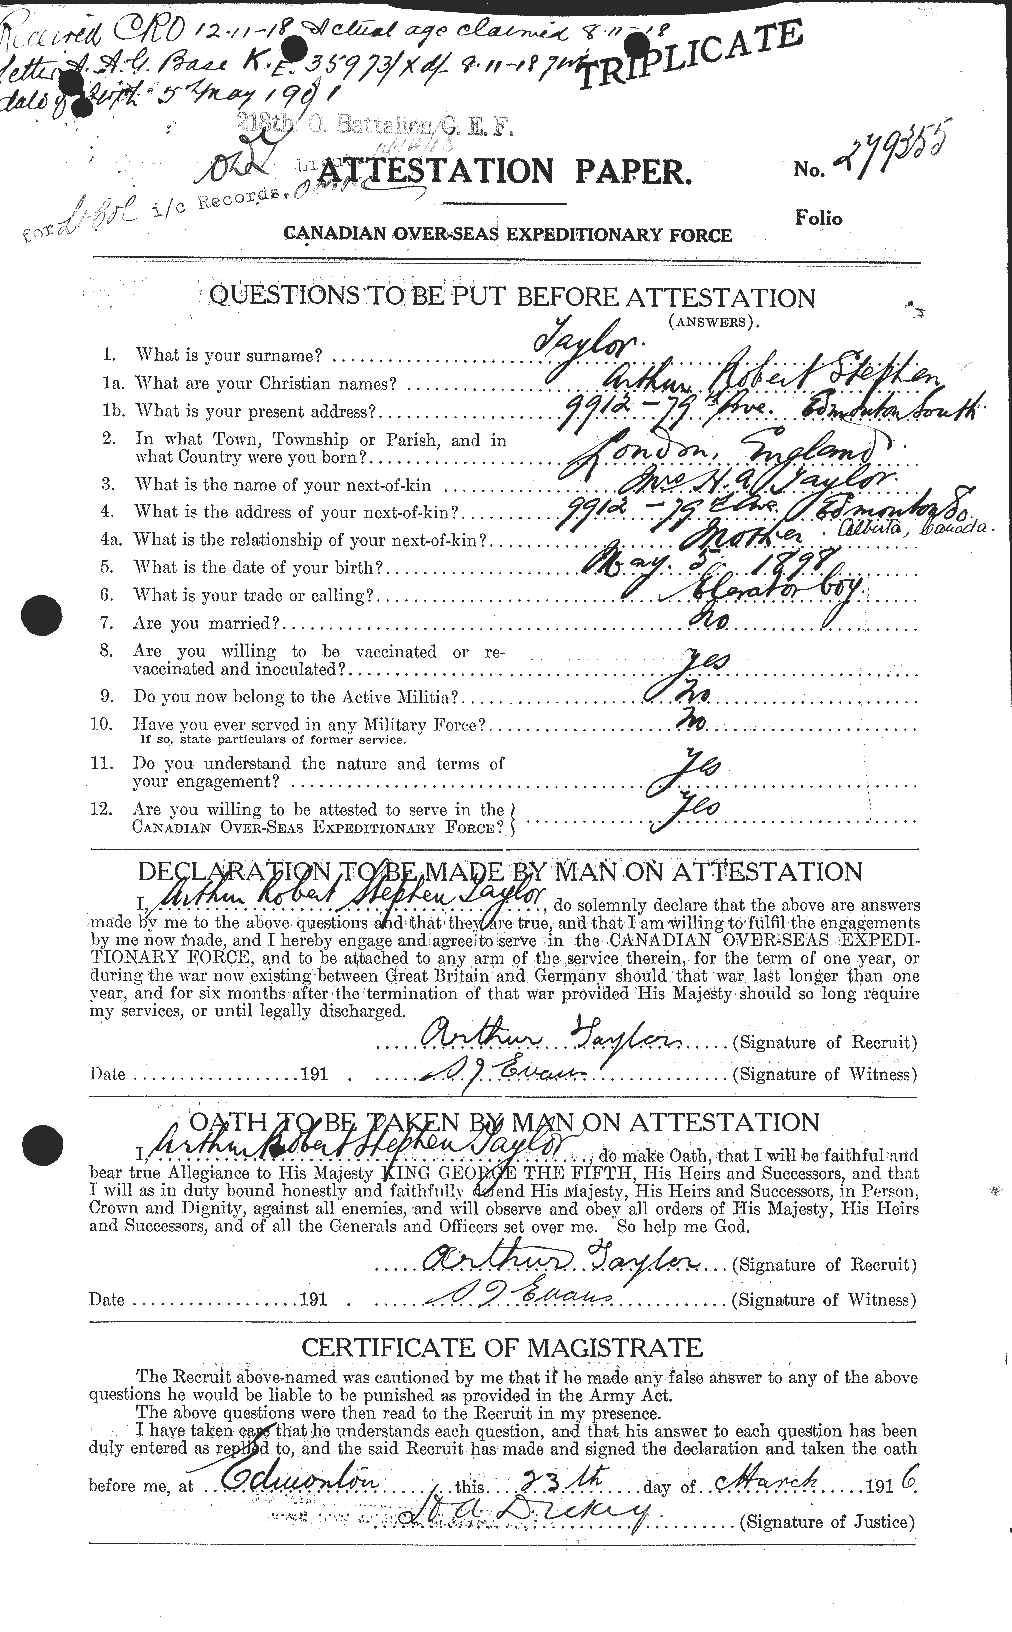 Dossiers du Personnel de la Première Guerre mondiale - CEC 626742a